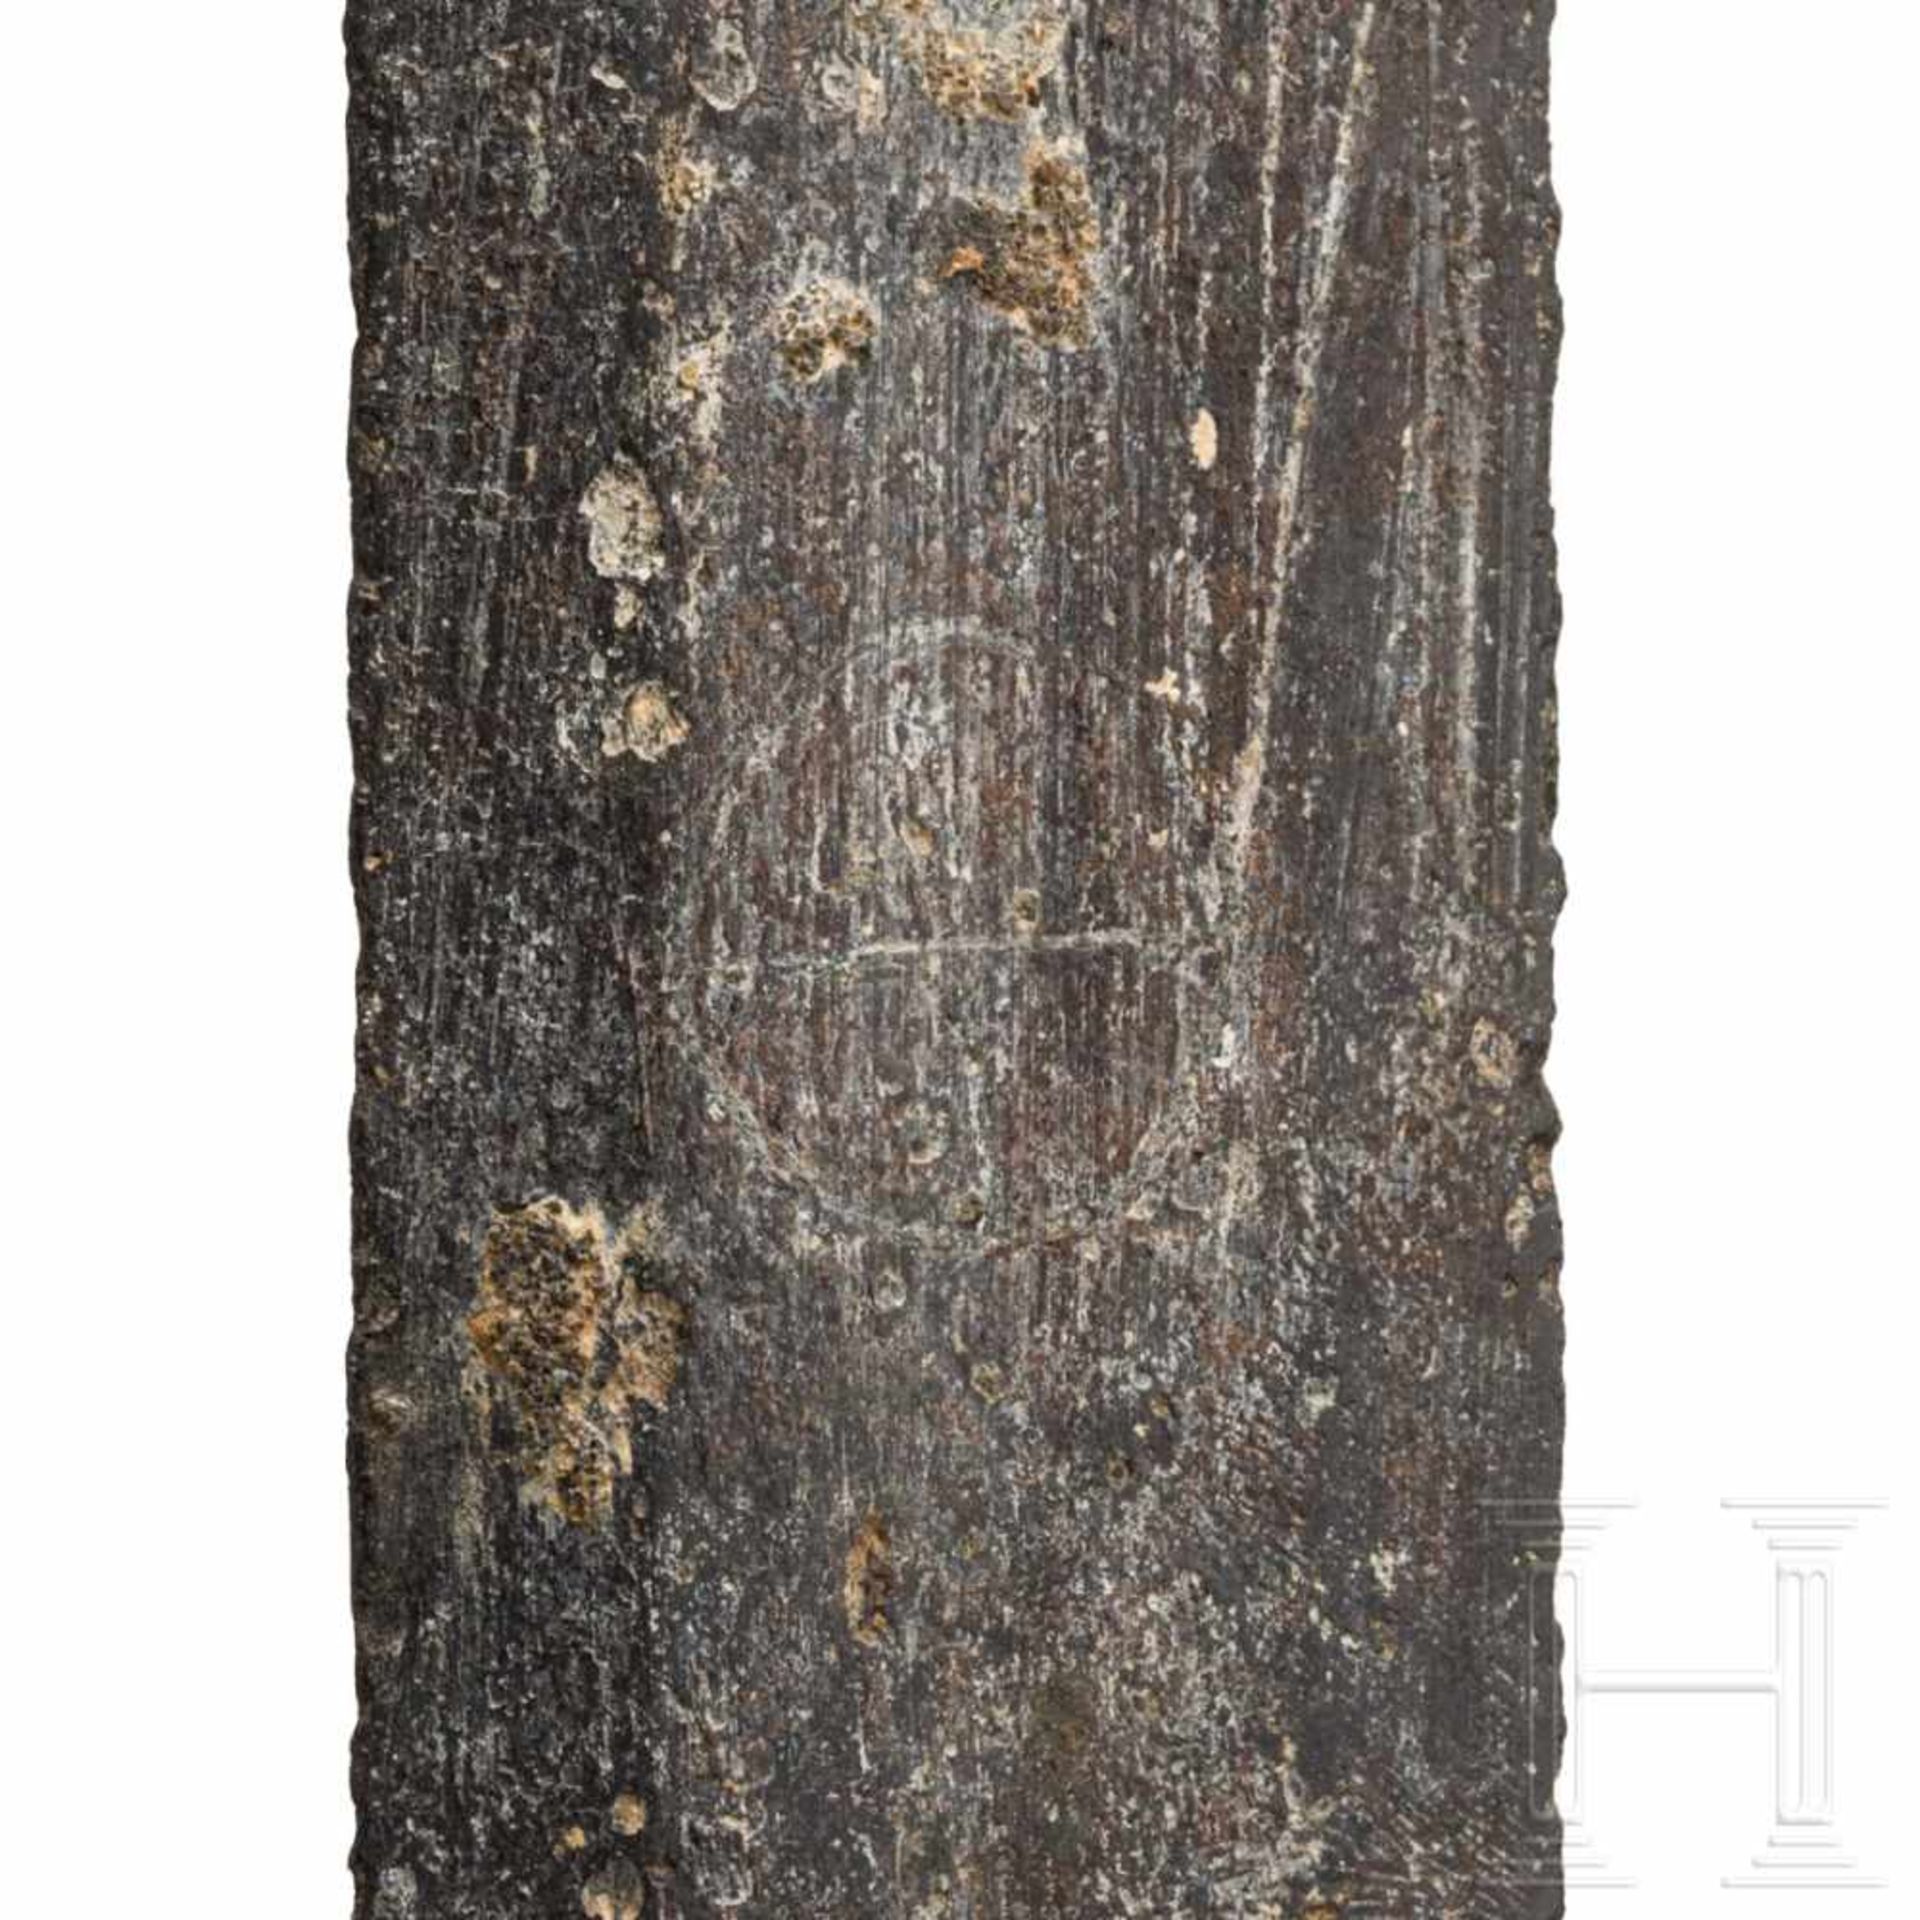 A German or Polish knightly sword, circa 1460Kräftige zweischneidige Klinge mit abgeflachtem - Bild 5 aus 5